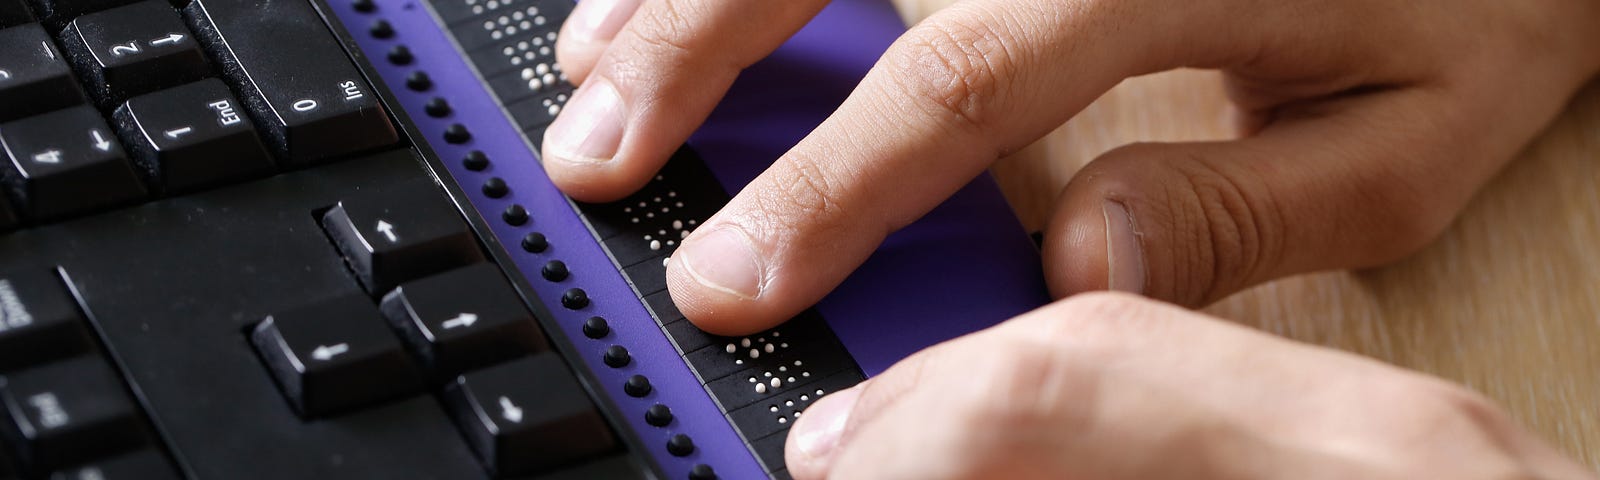 Pessoa cega usando o computador com display Braille